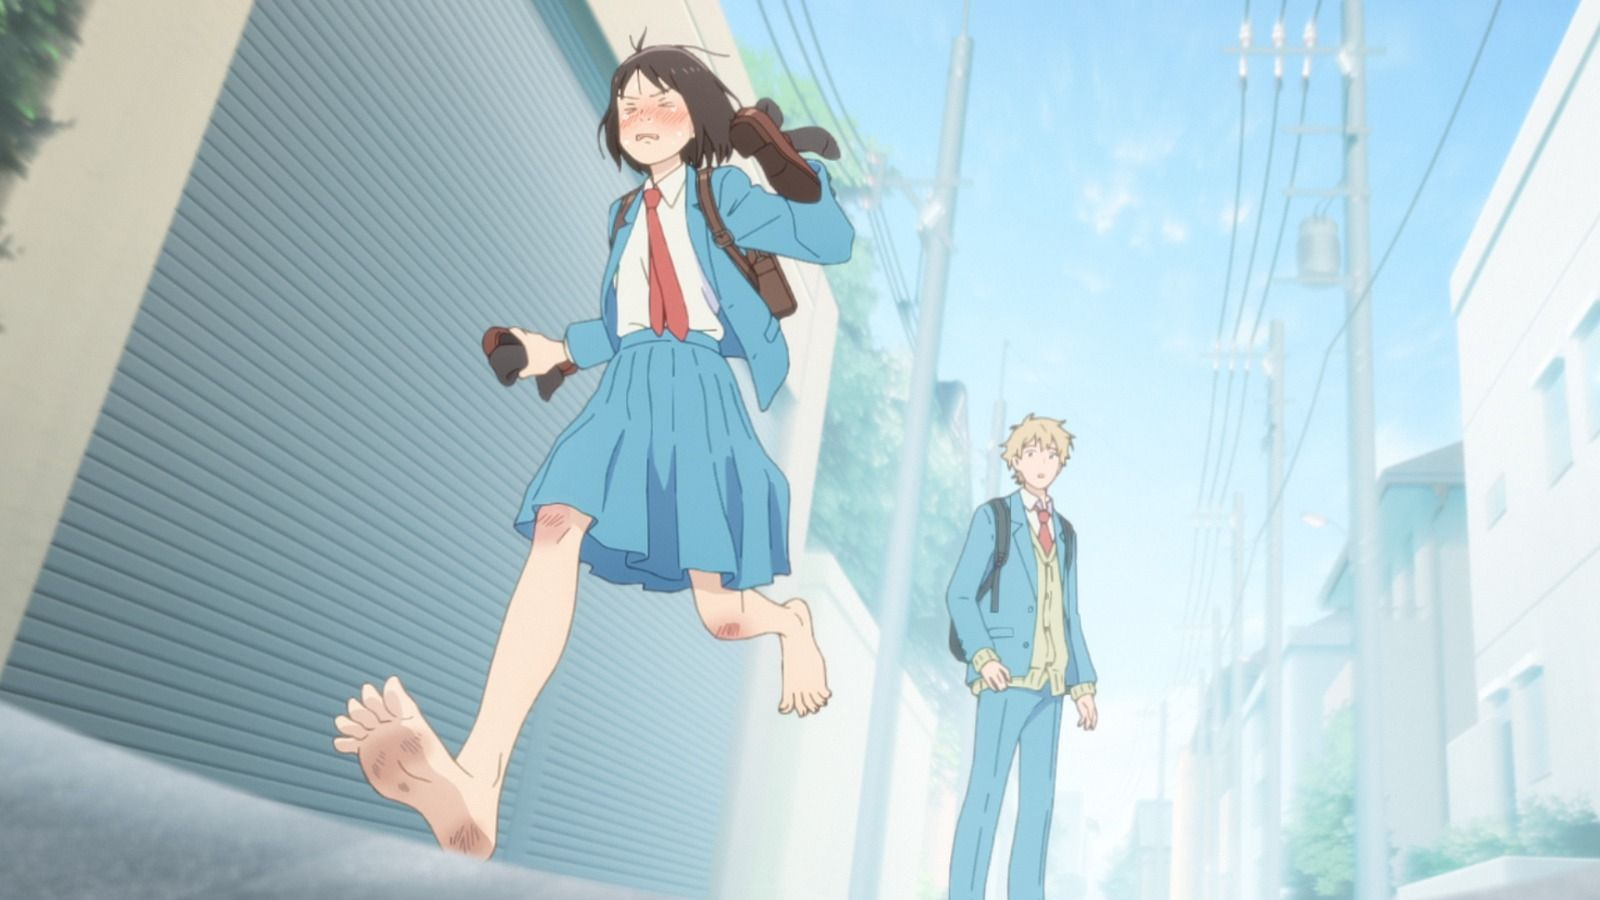 Anime Skip and Loafer: Kisah Komedi Romantis Gadis Kota Kecil Bertemu Anak Kota Kecil yang Menggemaskan, Menjanjikan Hati yang Hangat